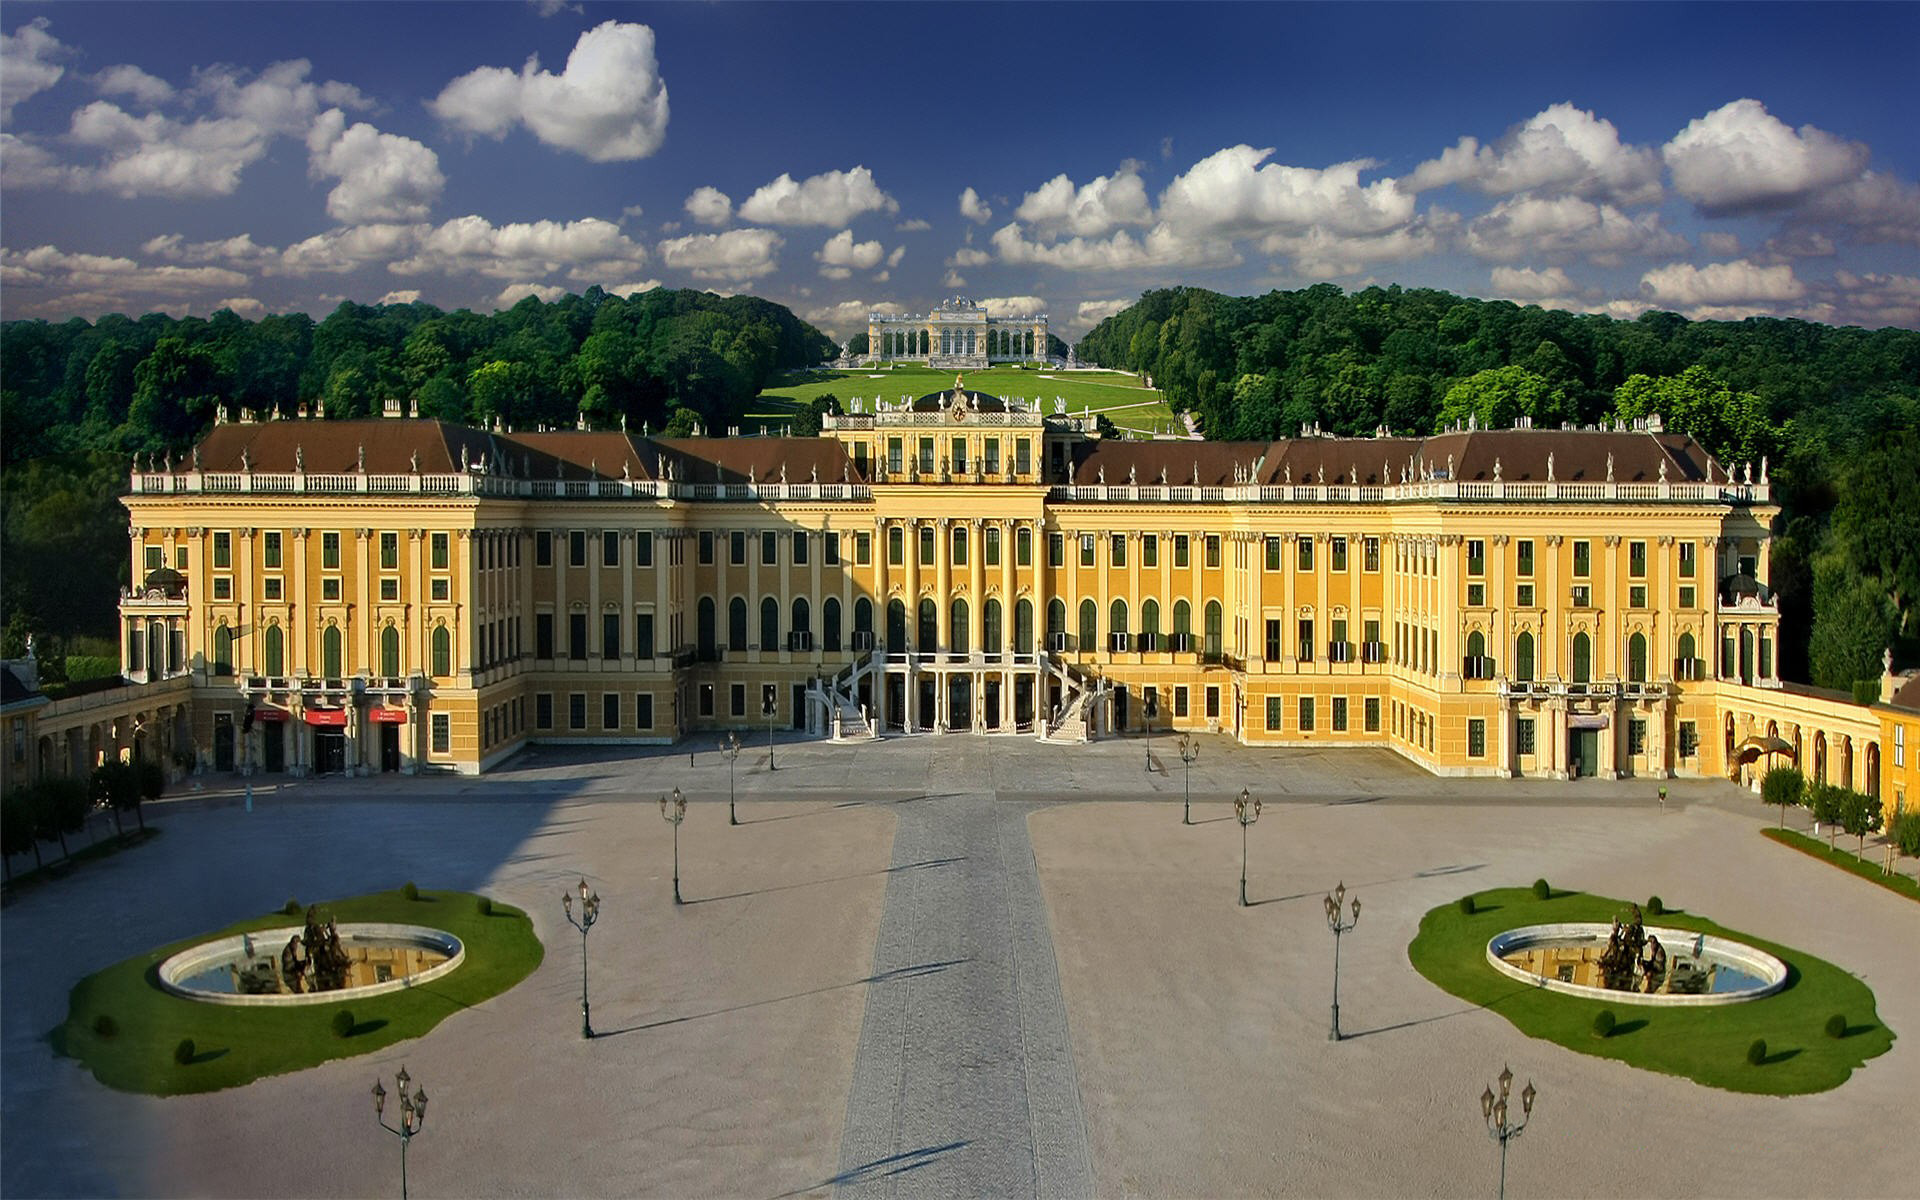 Императорская резиденция дворец Хофбург